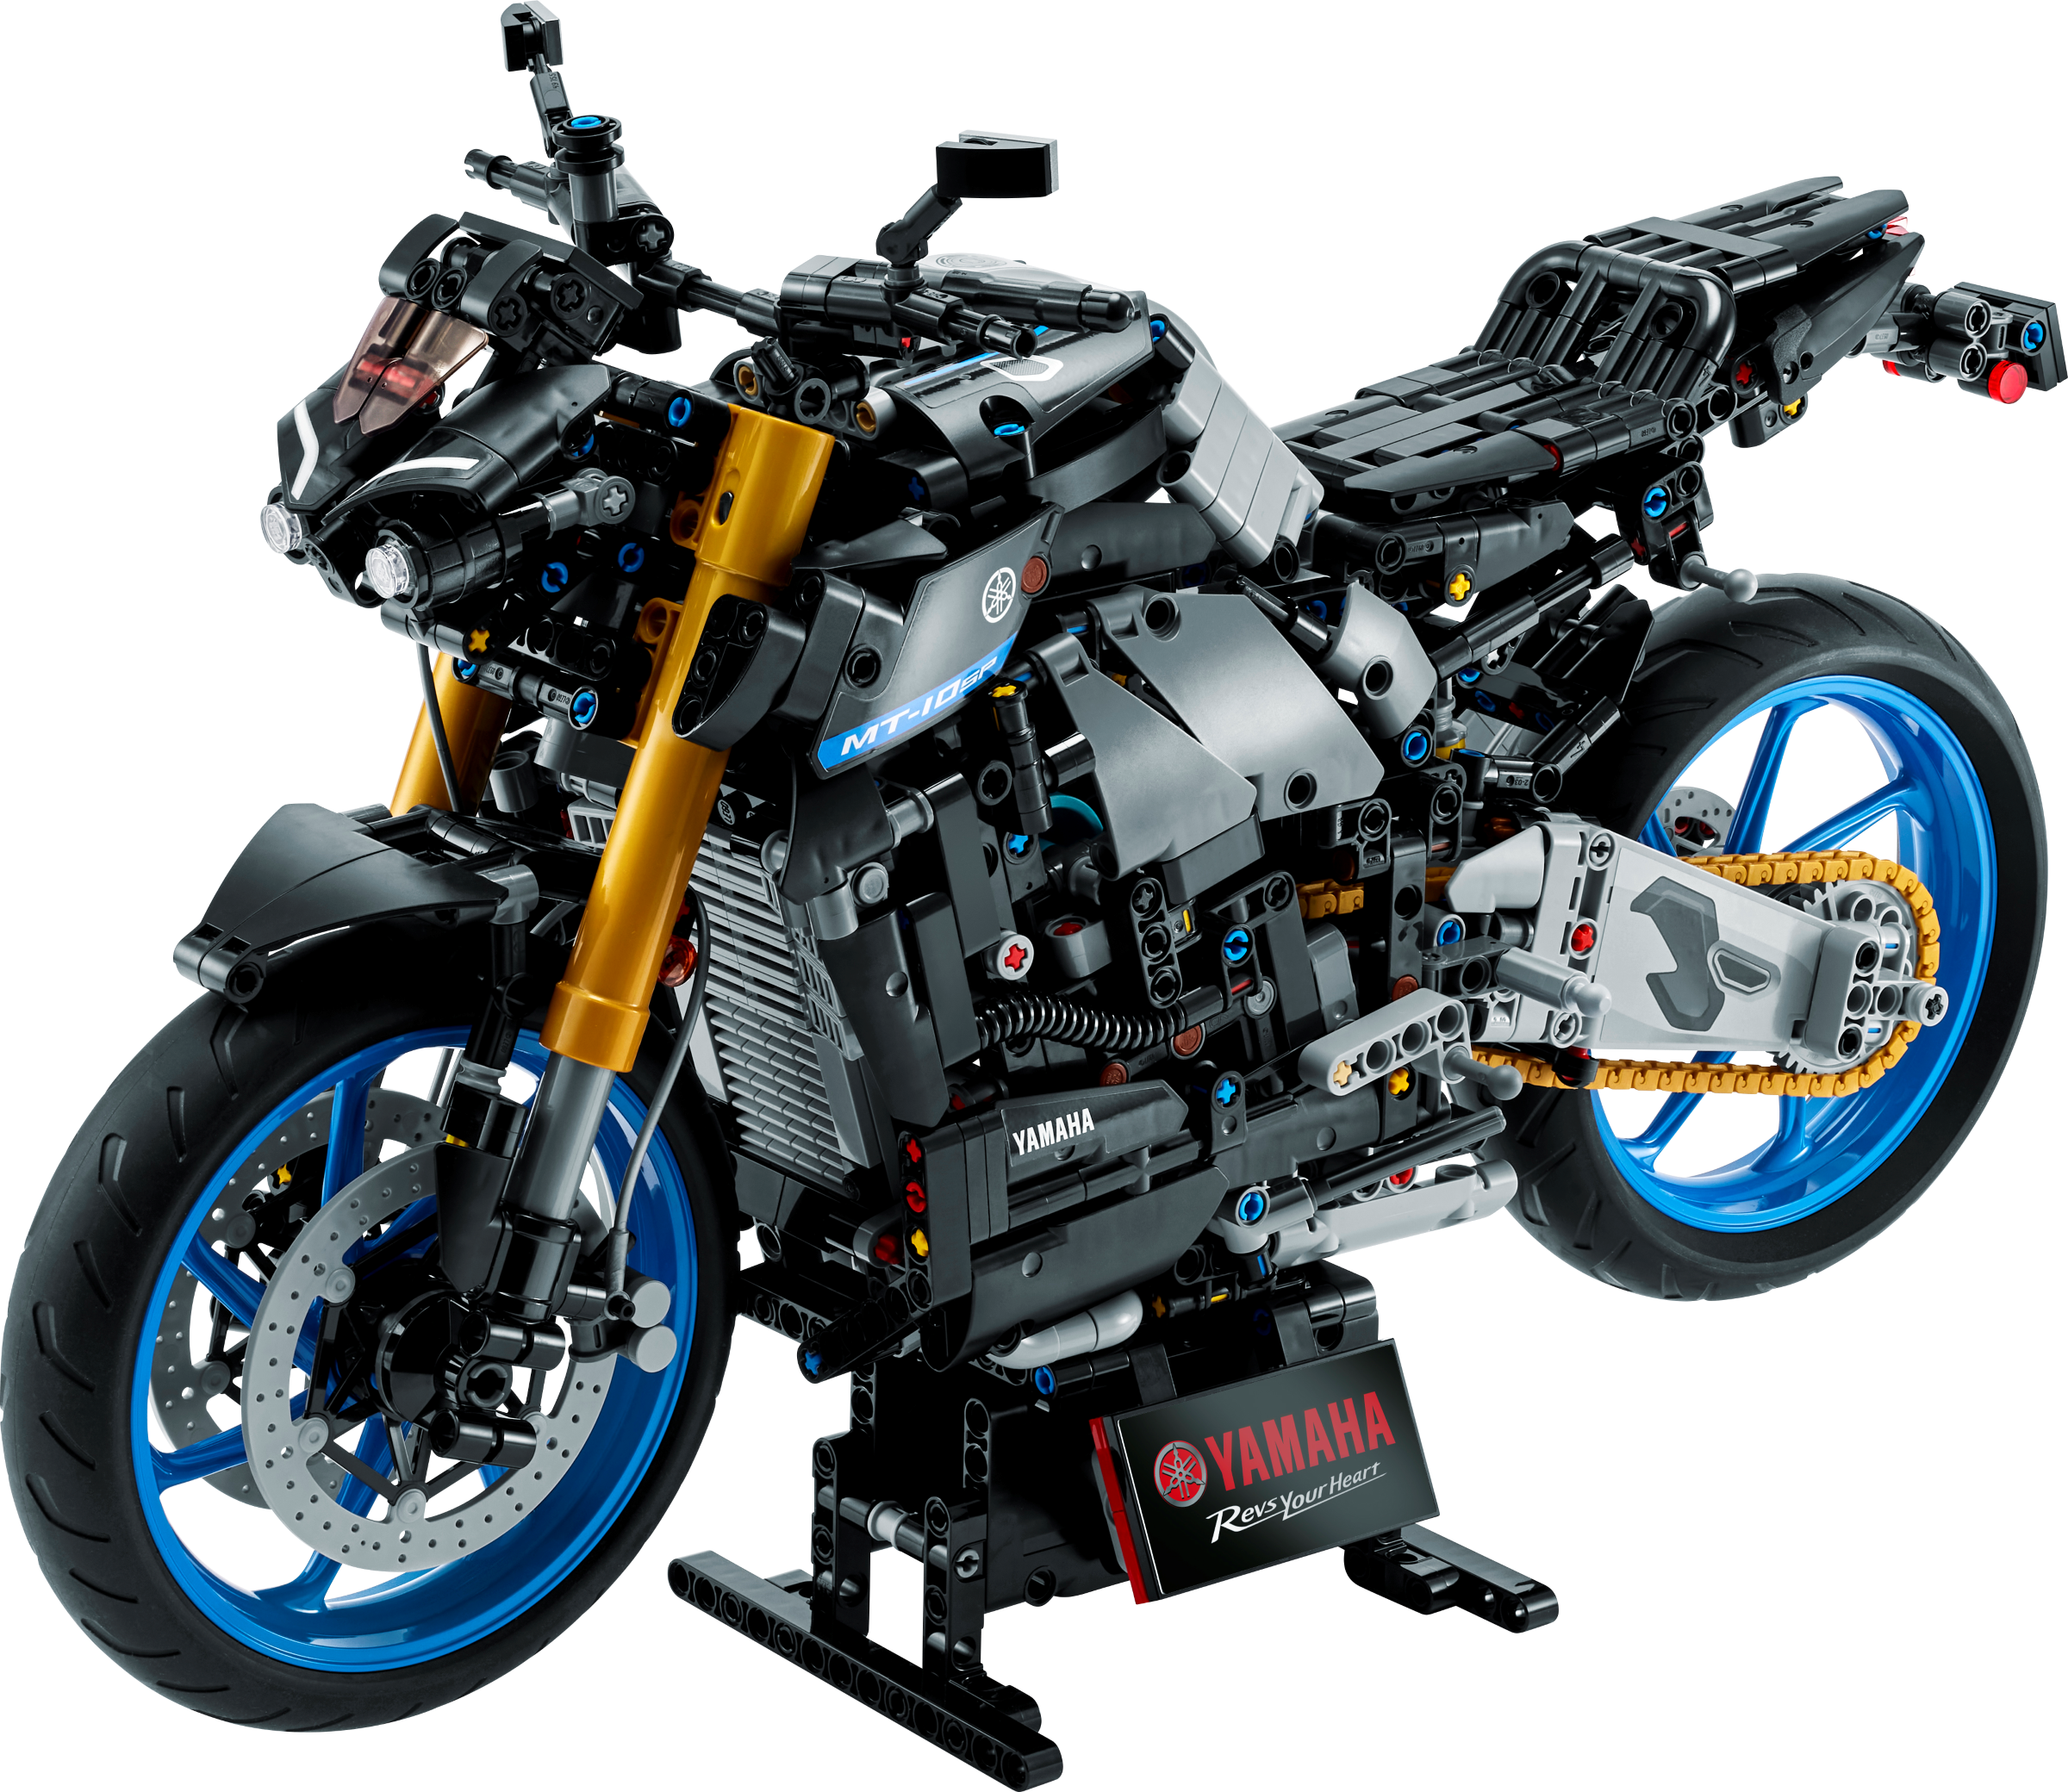 Yamaha MT-10 SP 42159 | Technic | Official LEGO® Shop SE